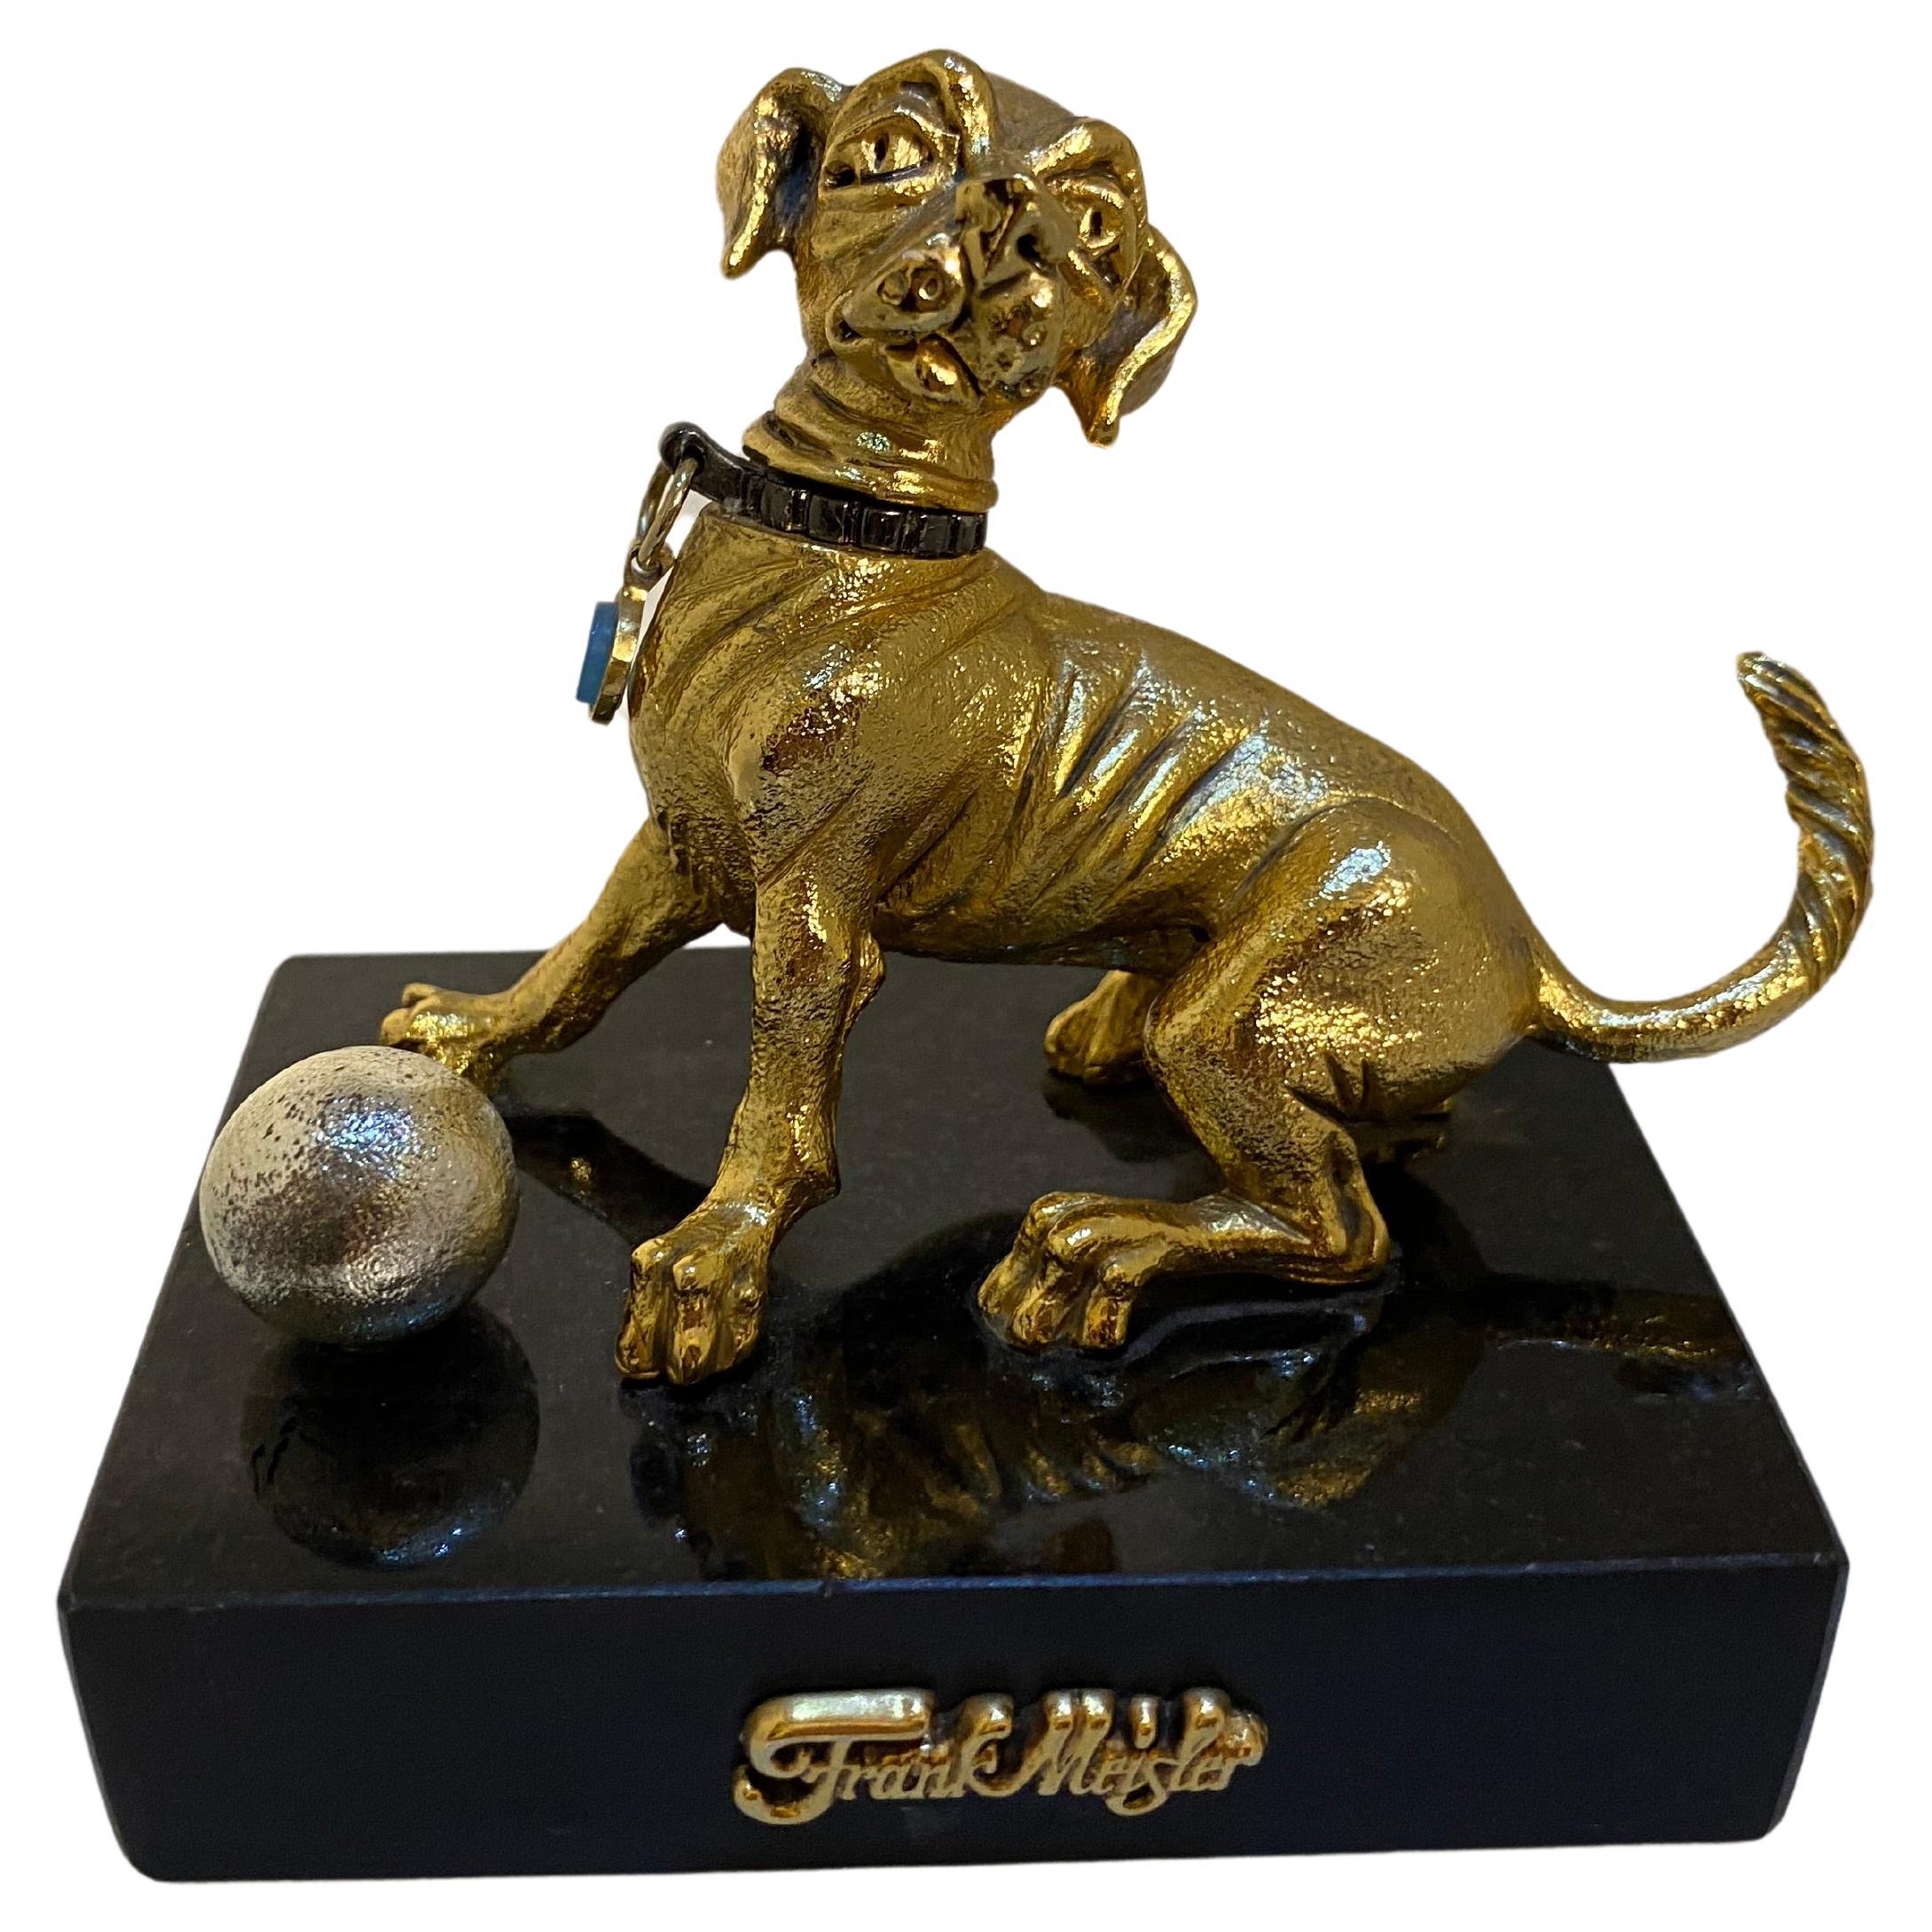 Frank Meisler Mini Gold Dog